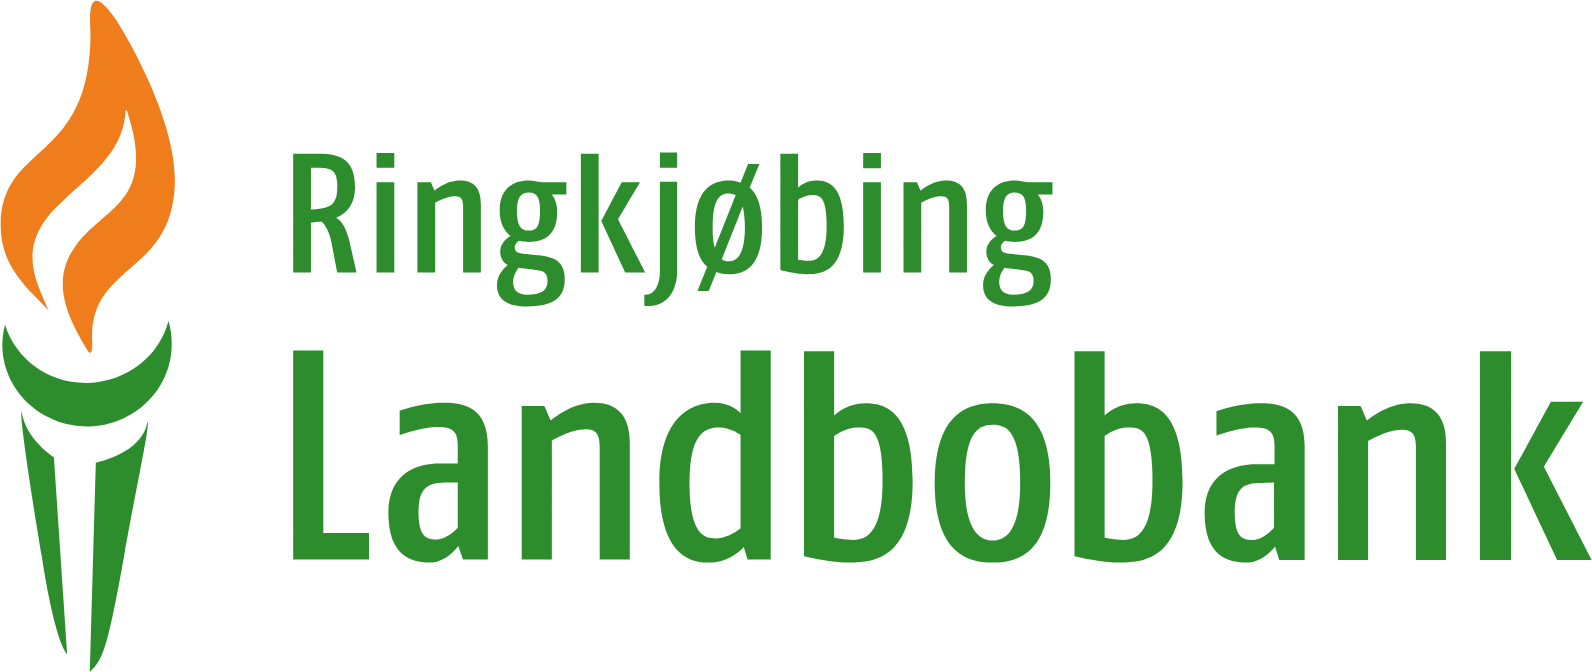 Ringkjøbing Landbobank logo large (transparent PNG)